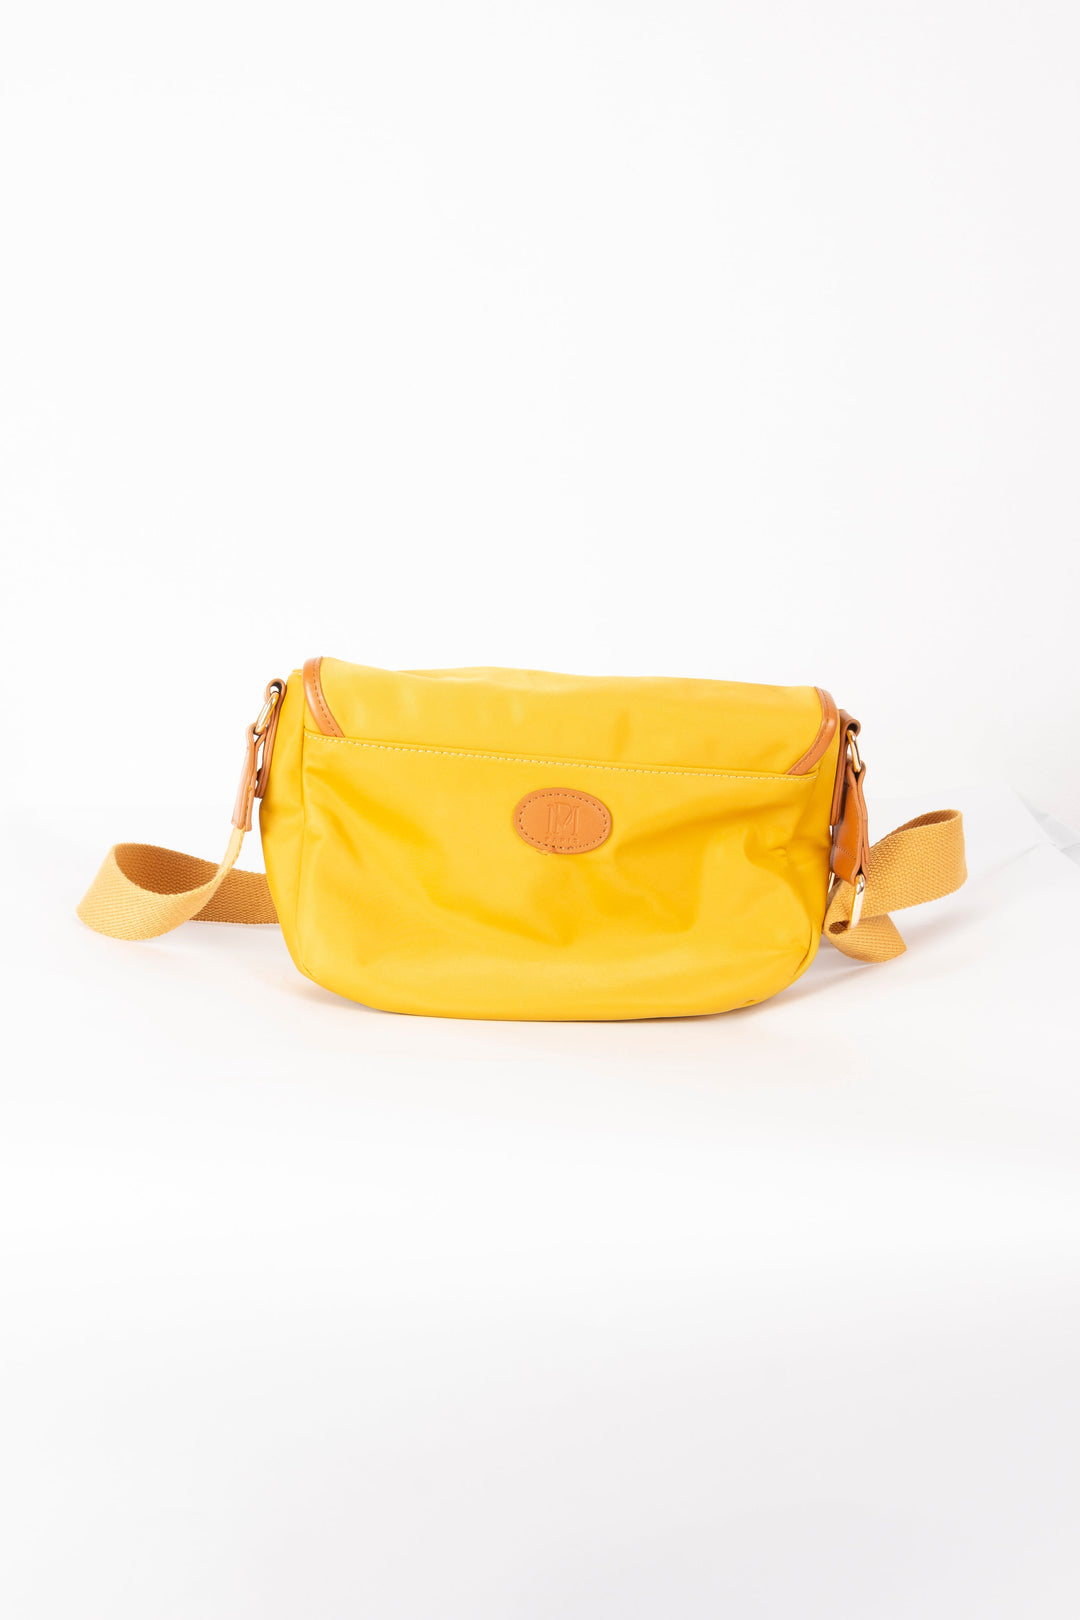 Yellow Handbag - TU